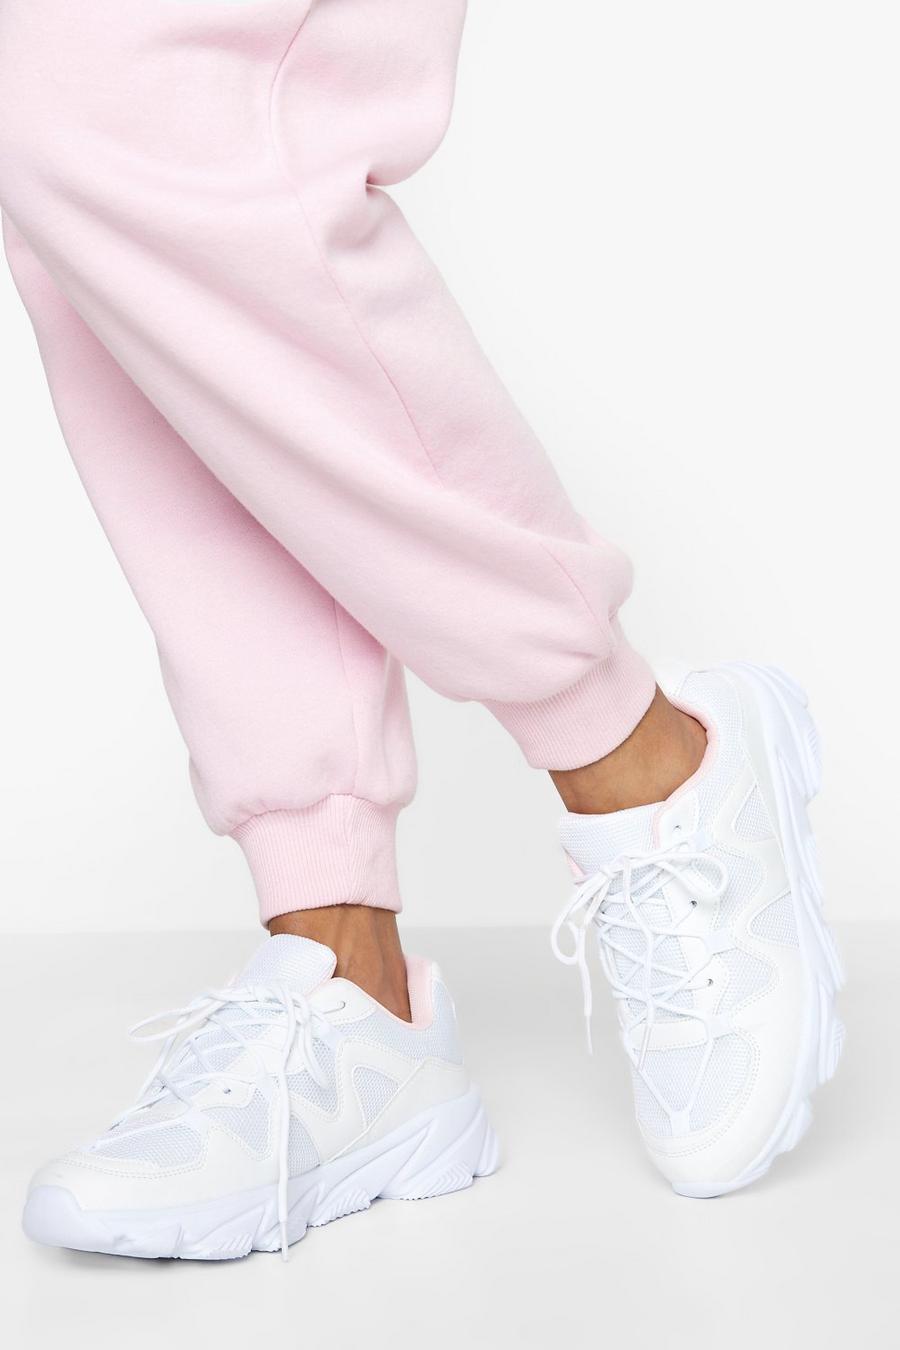 Scarpe da ginnastica a calzata ampia con pannelli in rete e suola spessa, White bianco